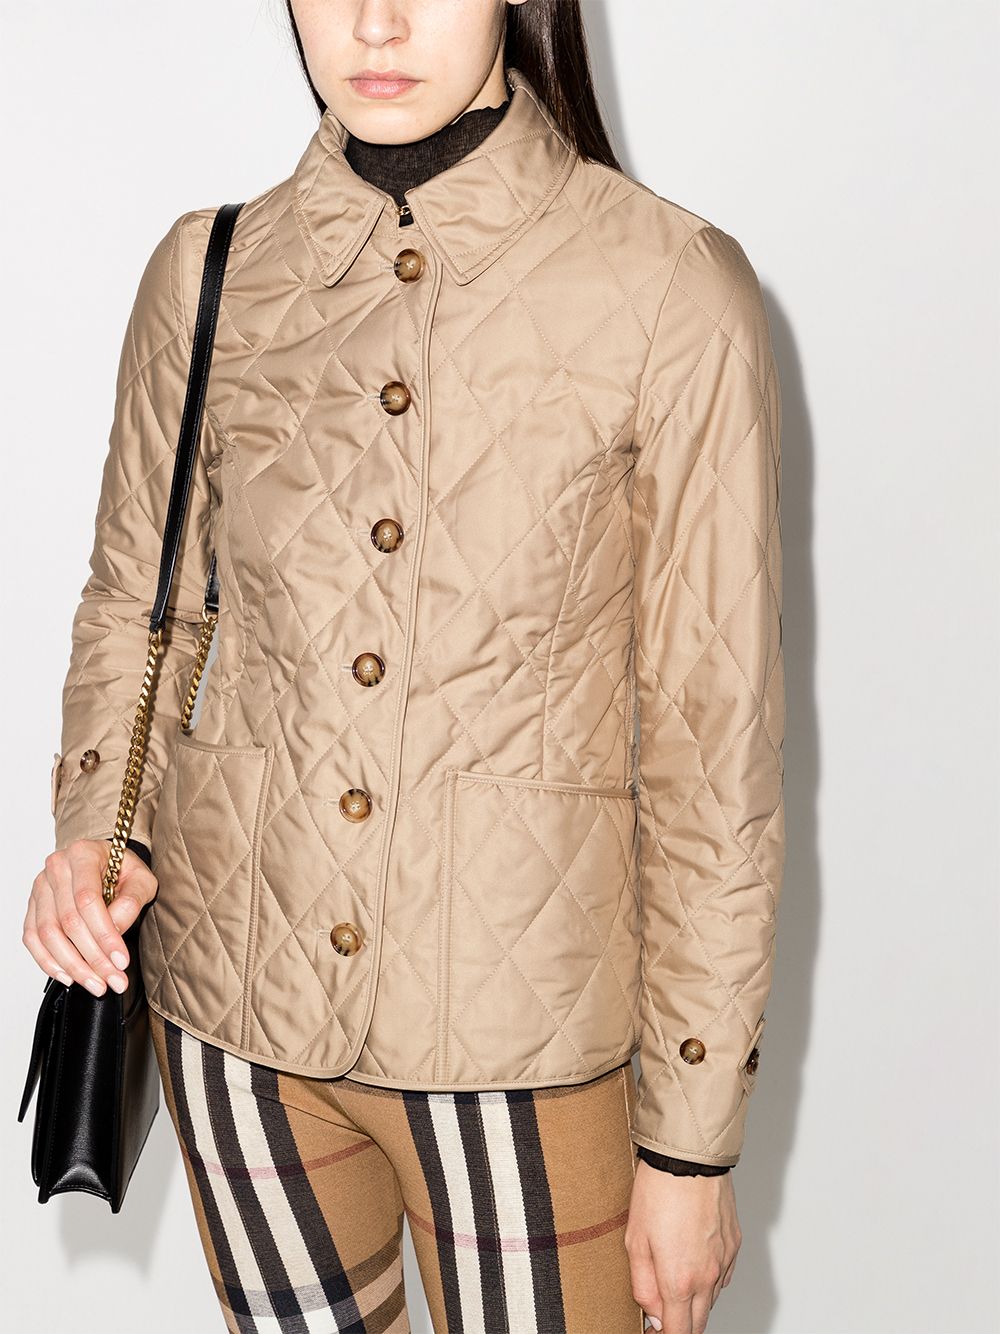 Где купить и с чем носить стеганую куртку — самую модную верхнюю одежду этой осени